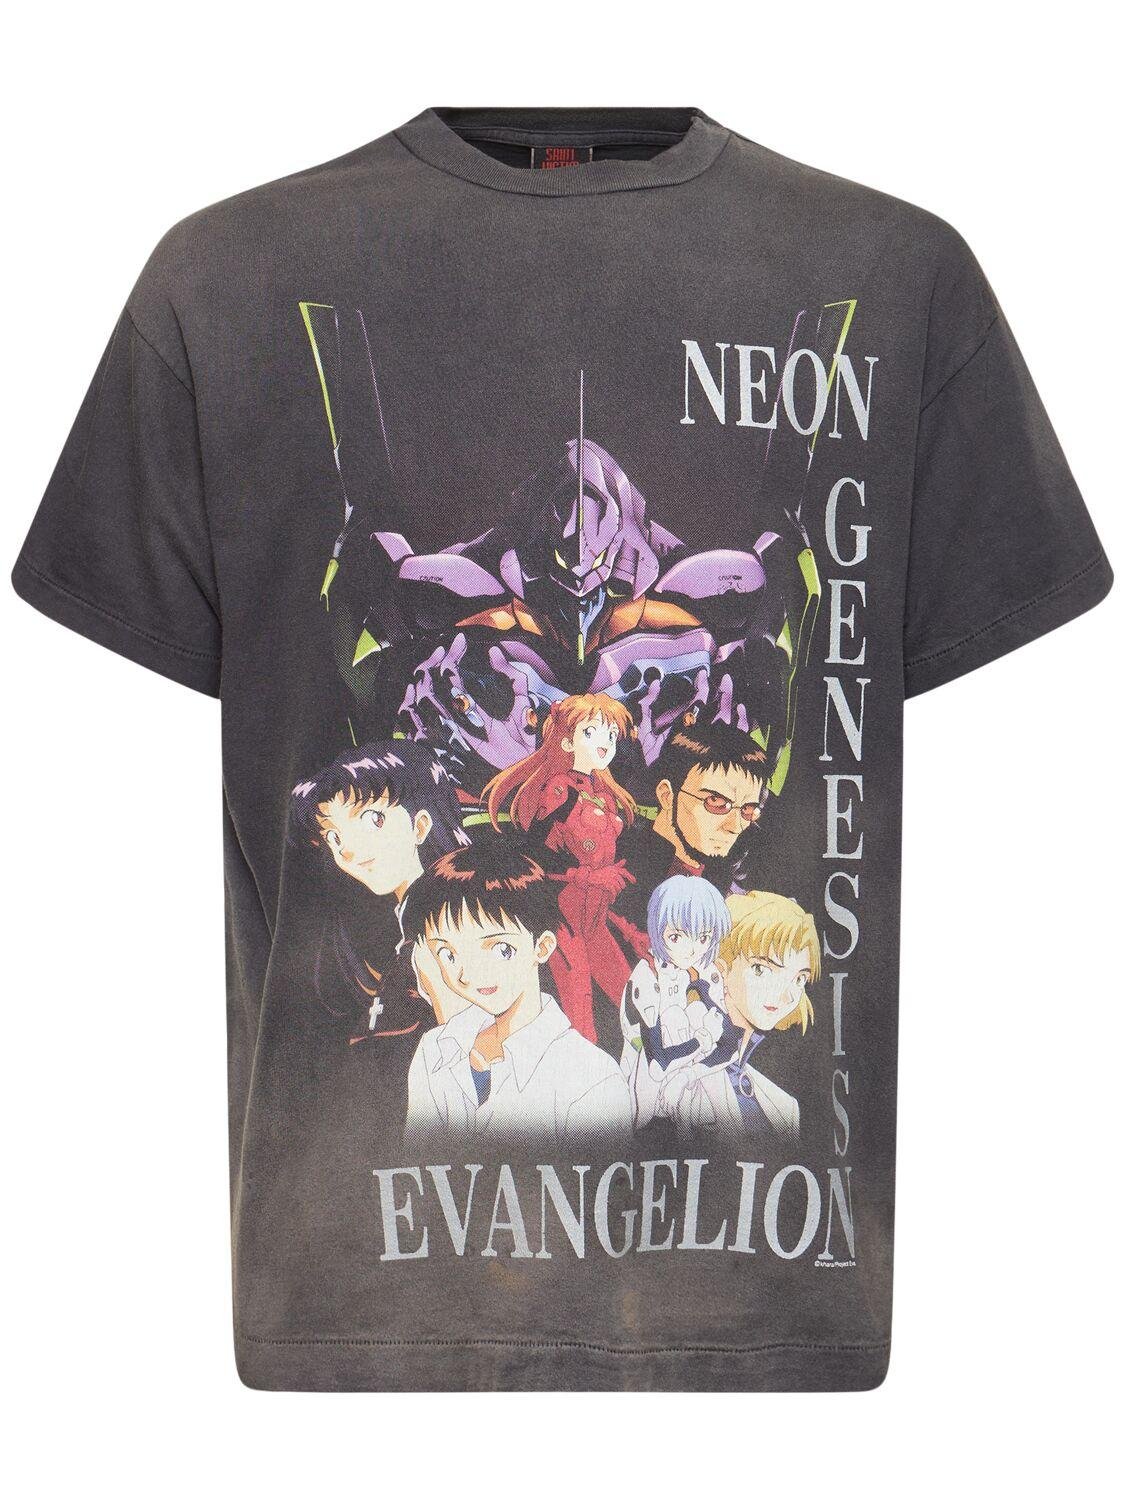 Evangelion X Saint Mx6 T-shirt by SAINT MICHAEL